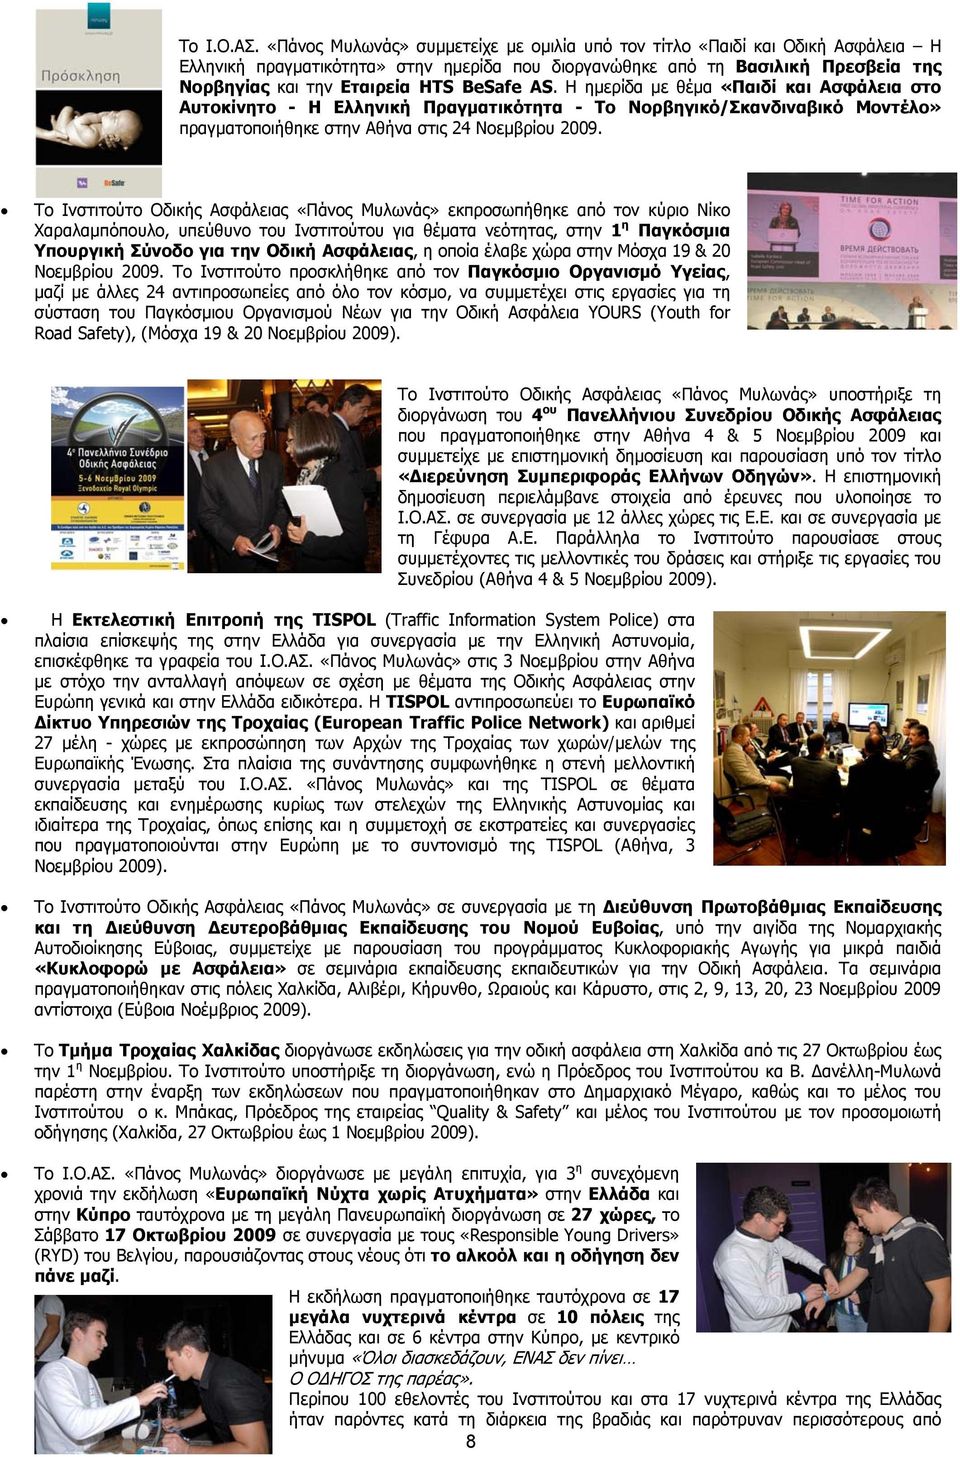 BeSafe AS. Η ημερίδα με θέμα «Παιδί και Ασφάλεια στο Αυτοκίνητο - Η Ελληνική Πραγματικότητα - Το Νορβηγικό/Σκανδιναβικό Μοντέλο» πραγματοποιήθηκε στην Αθήνα στις 24 Νοεμβρίου 2009.